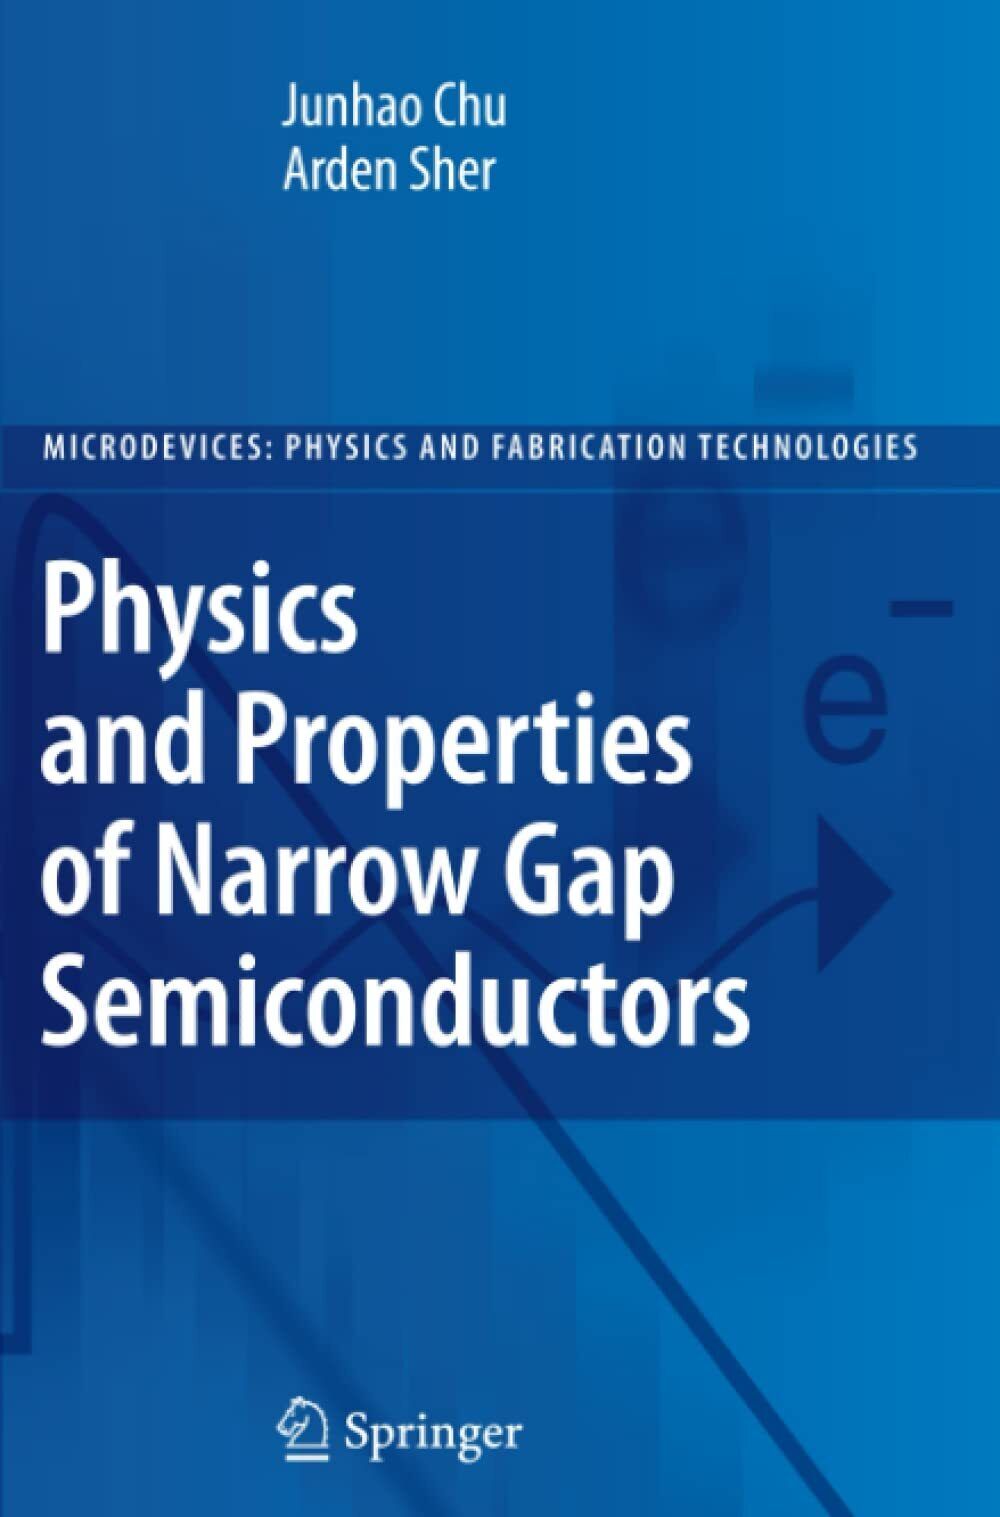 Physics and Properties of Narrow Gap Semiconductors - Springer, 2010 libro usato